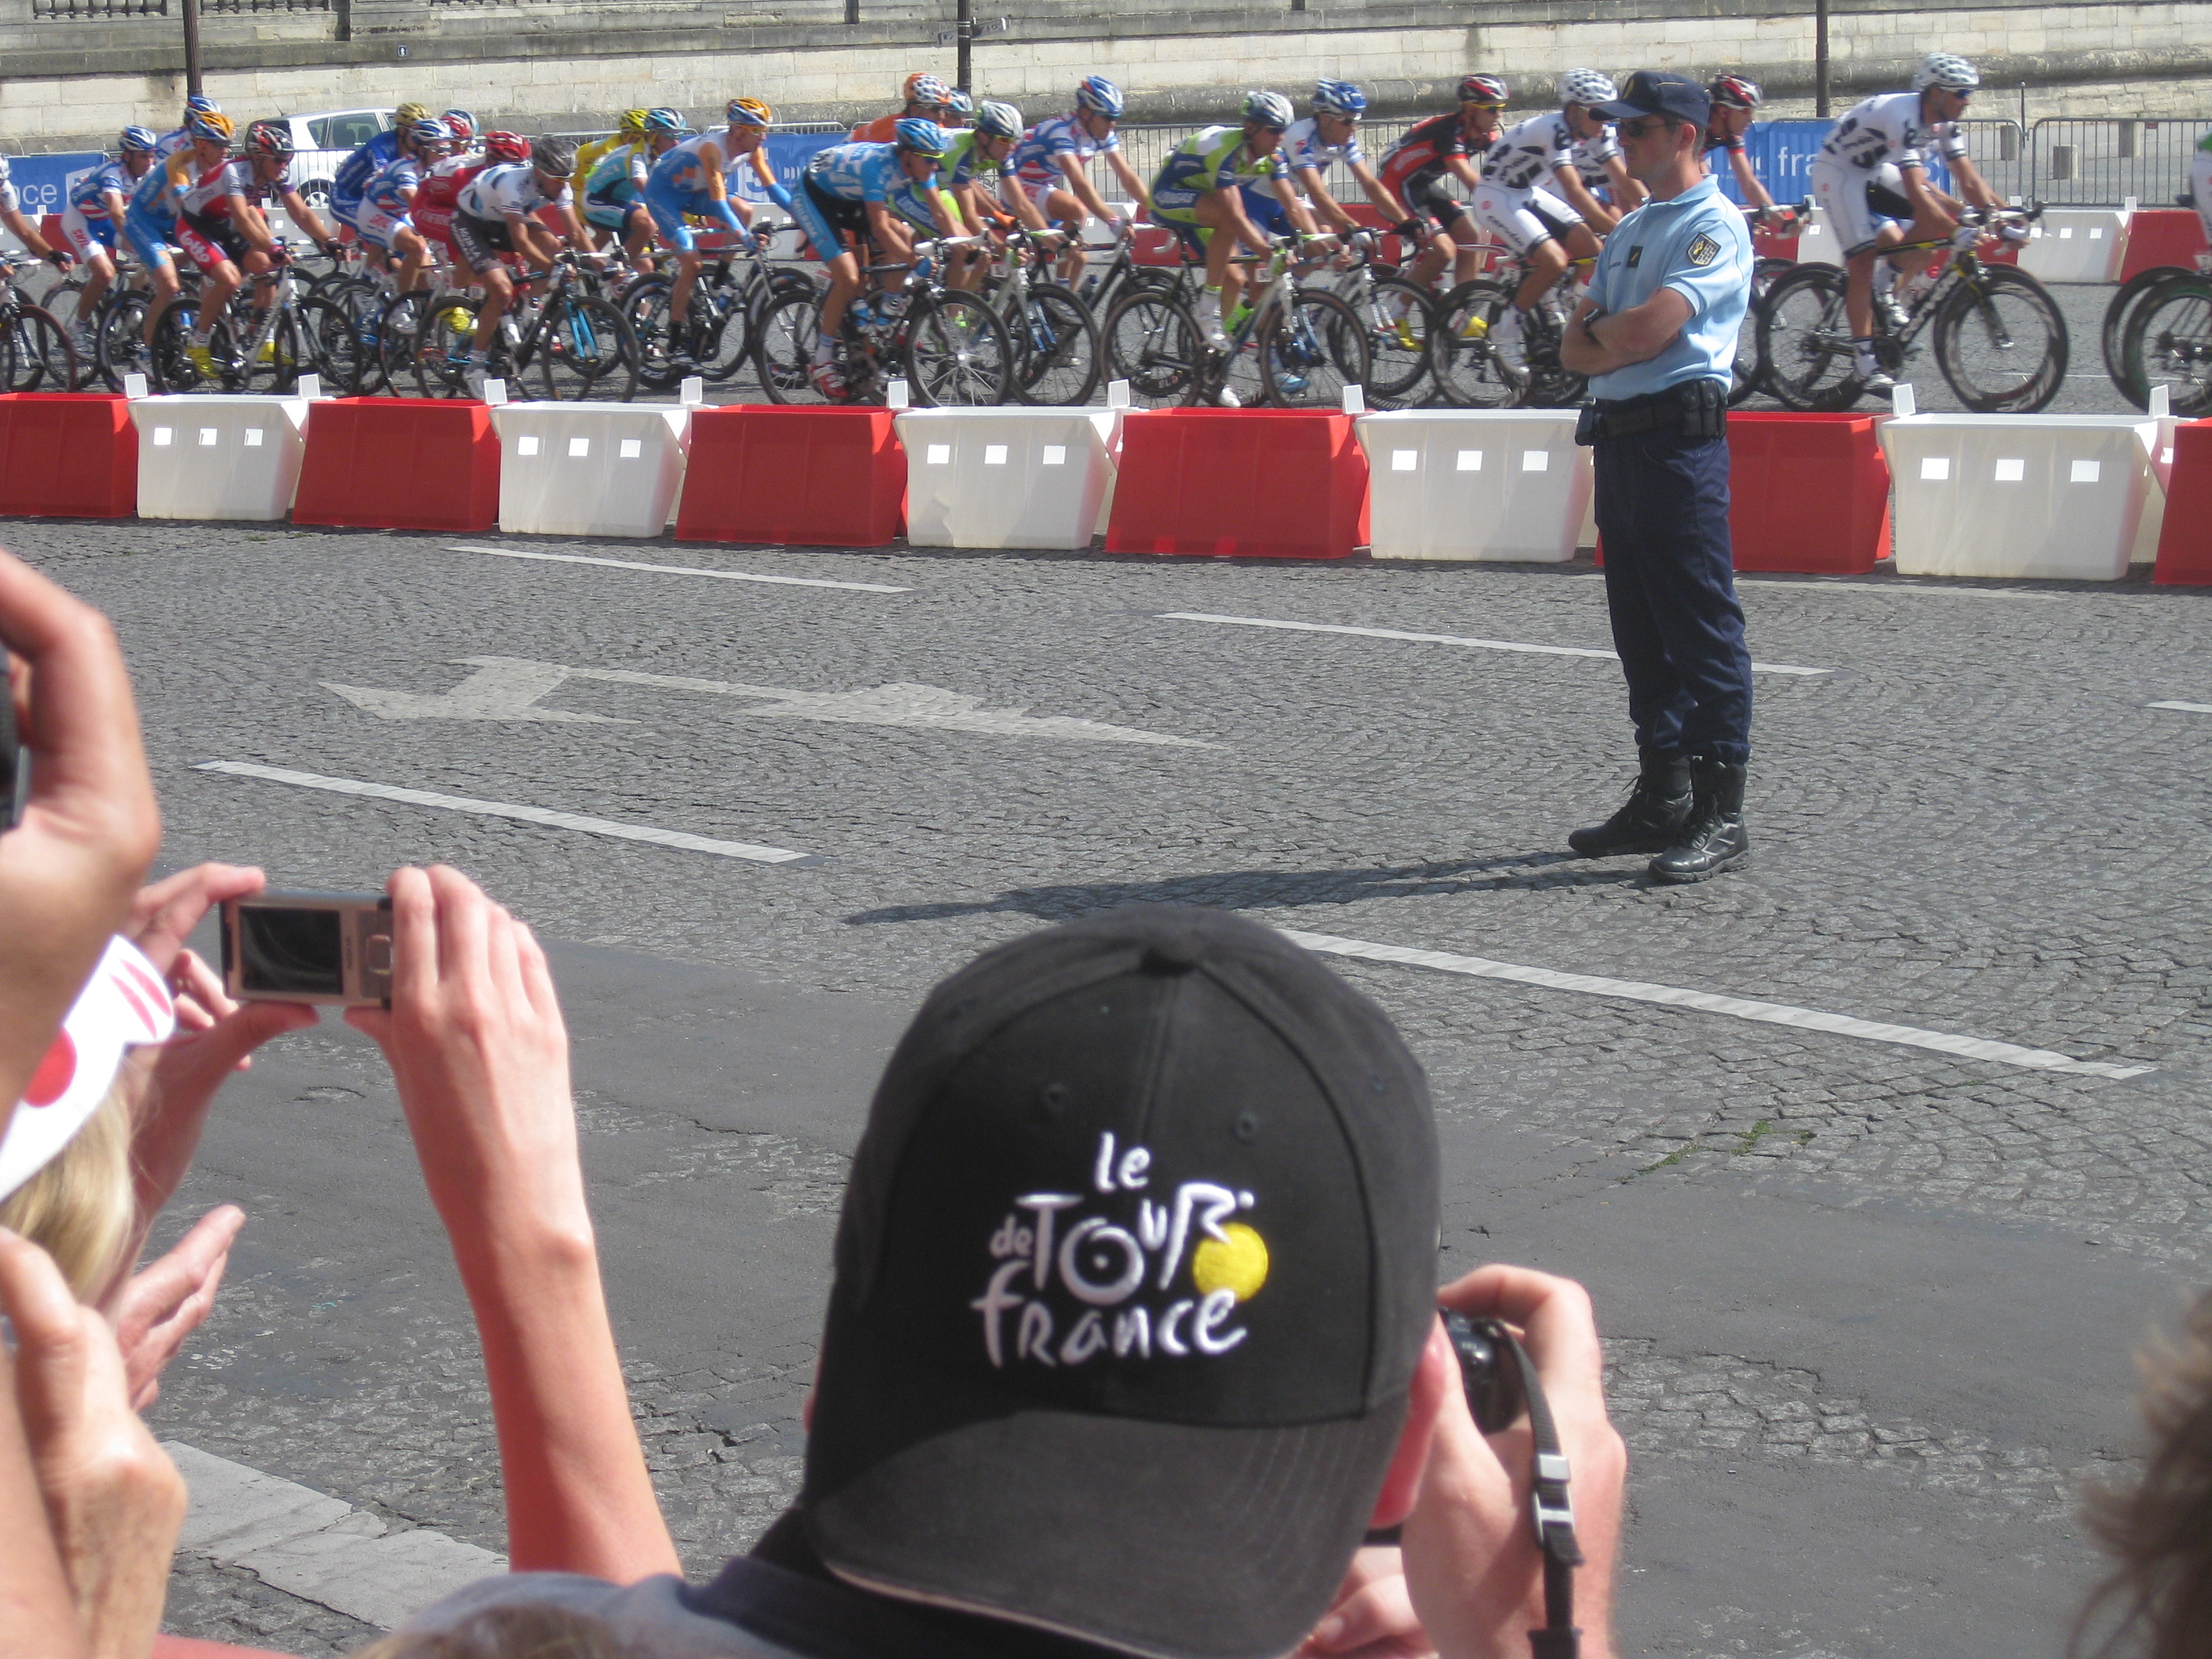 eager fans at Place de la Concorde as the bikers arrive